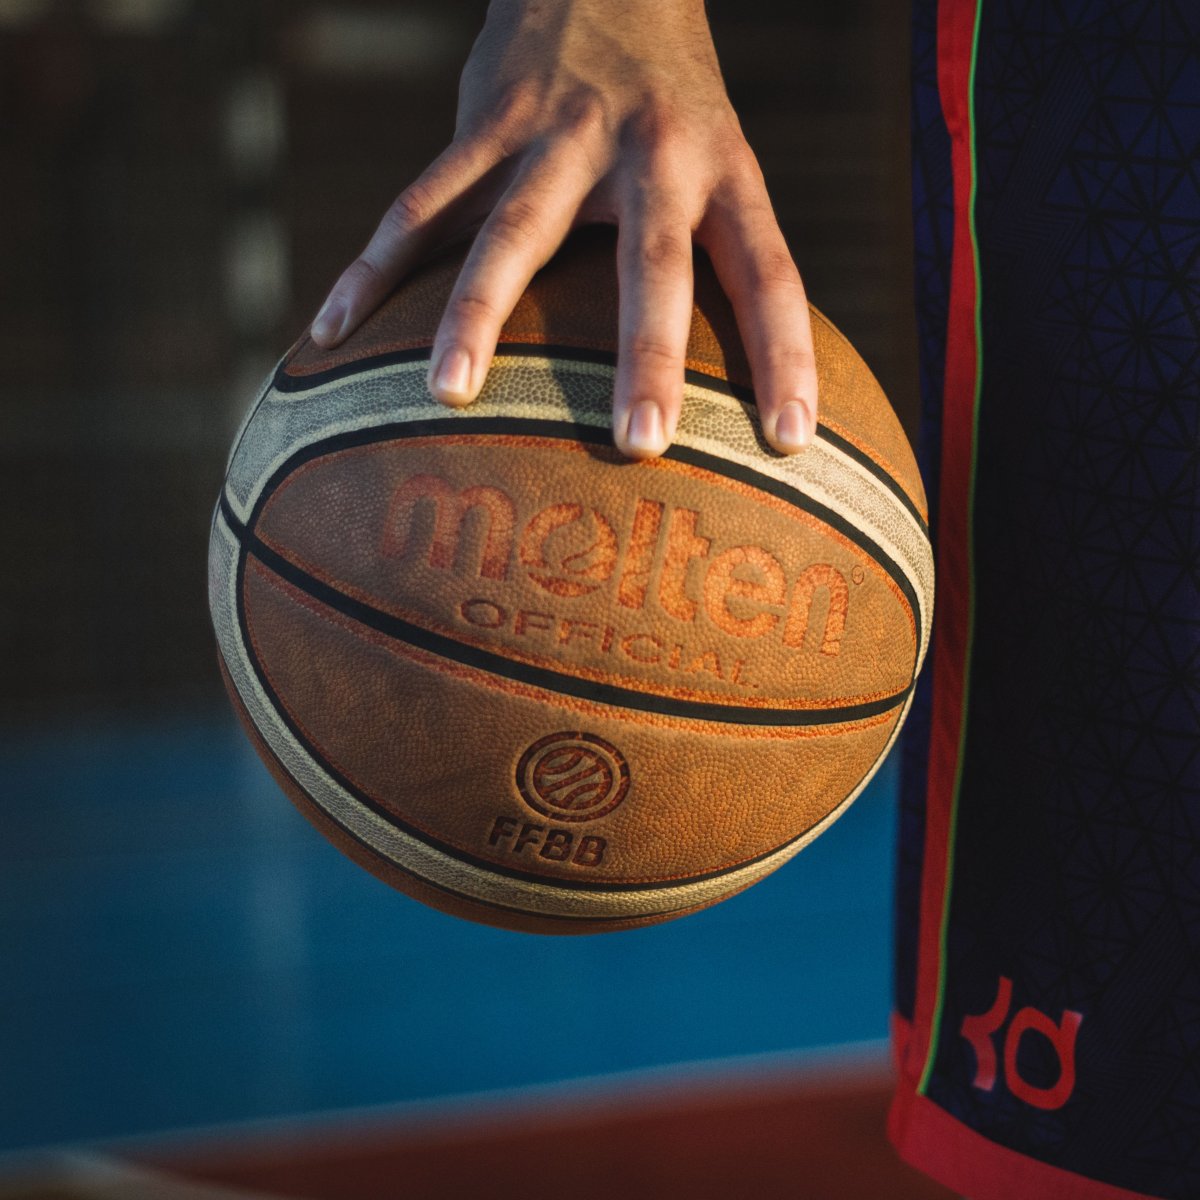 Баскетбольный мяч в руках